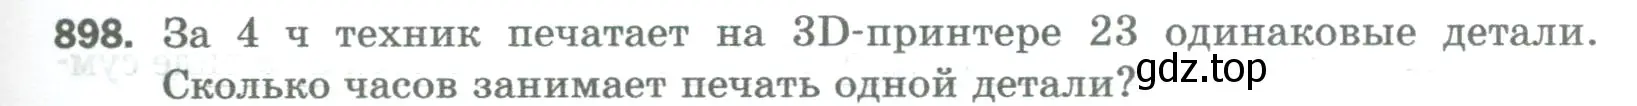 Условие номер 898 (страница 205) гдз по математике 5 класс Мерзляк, Полонский, учебник